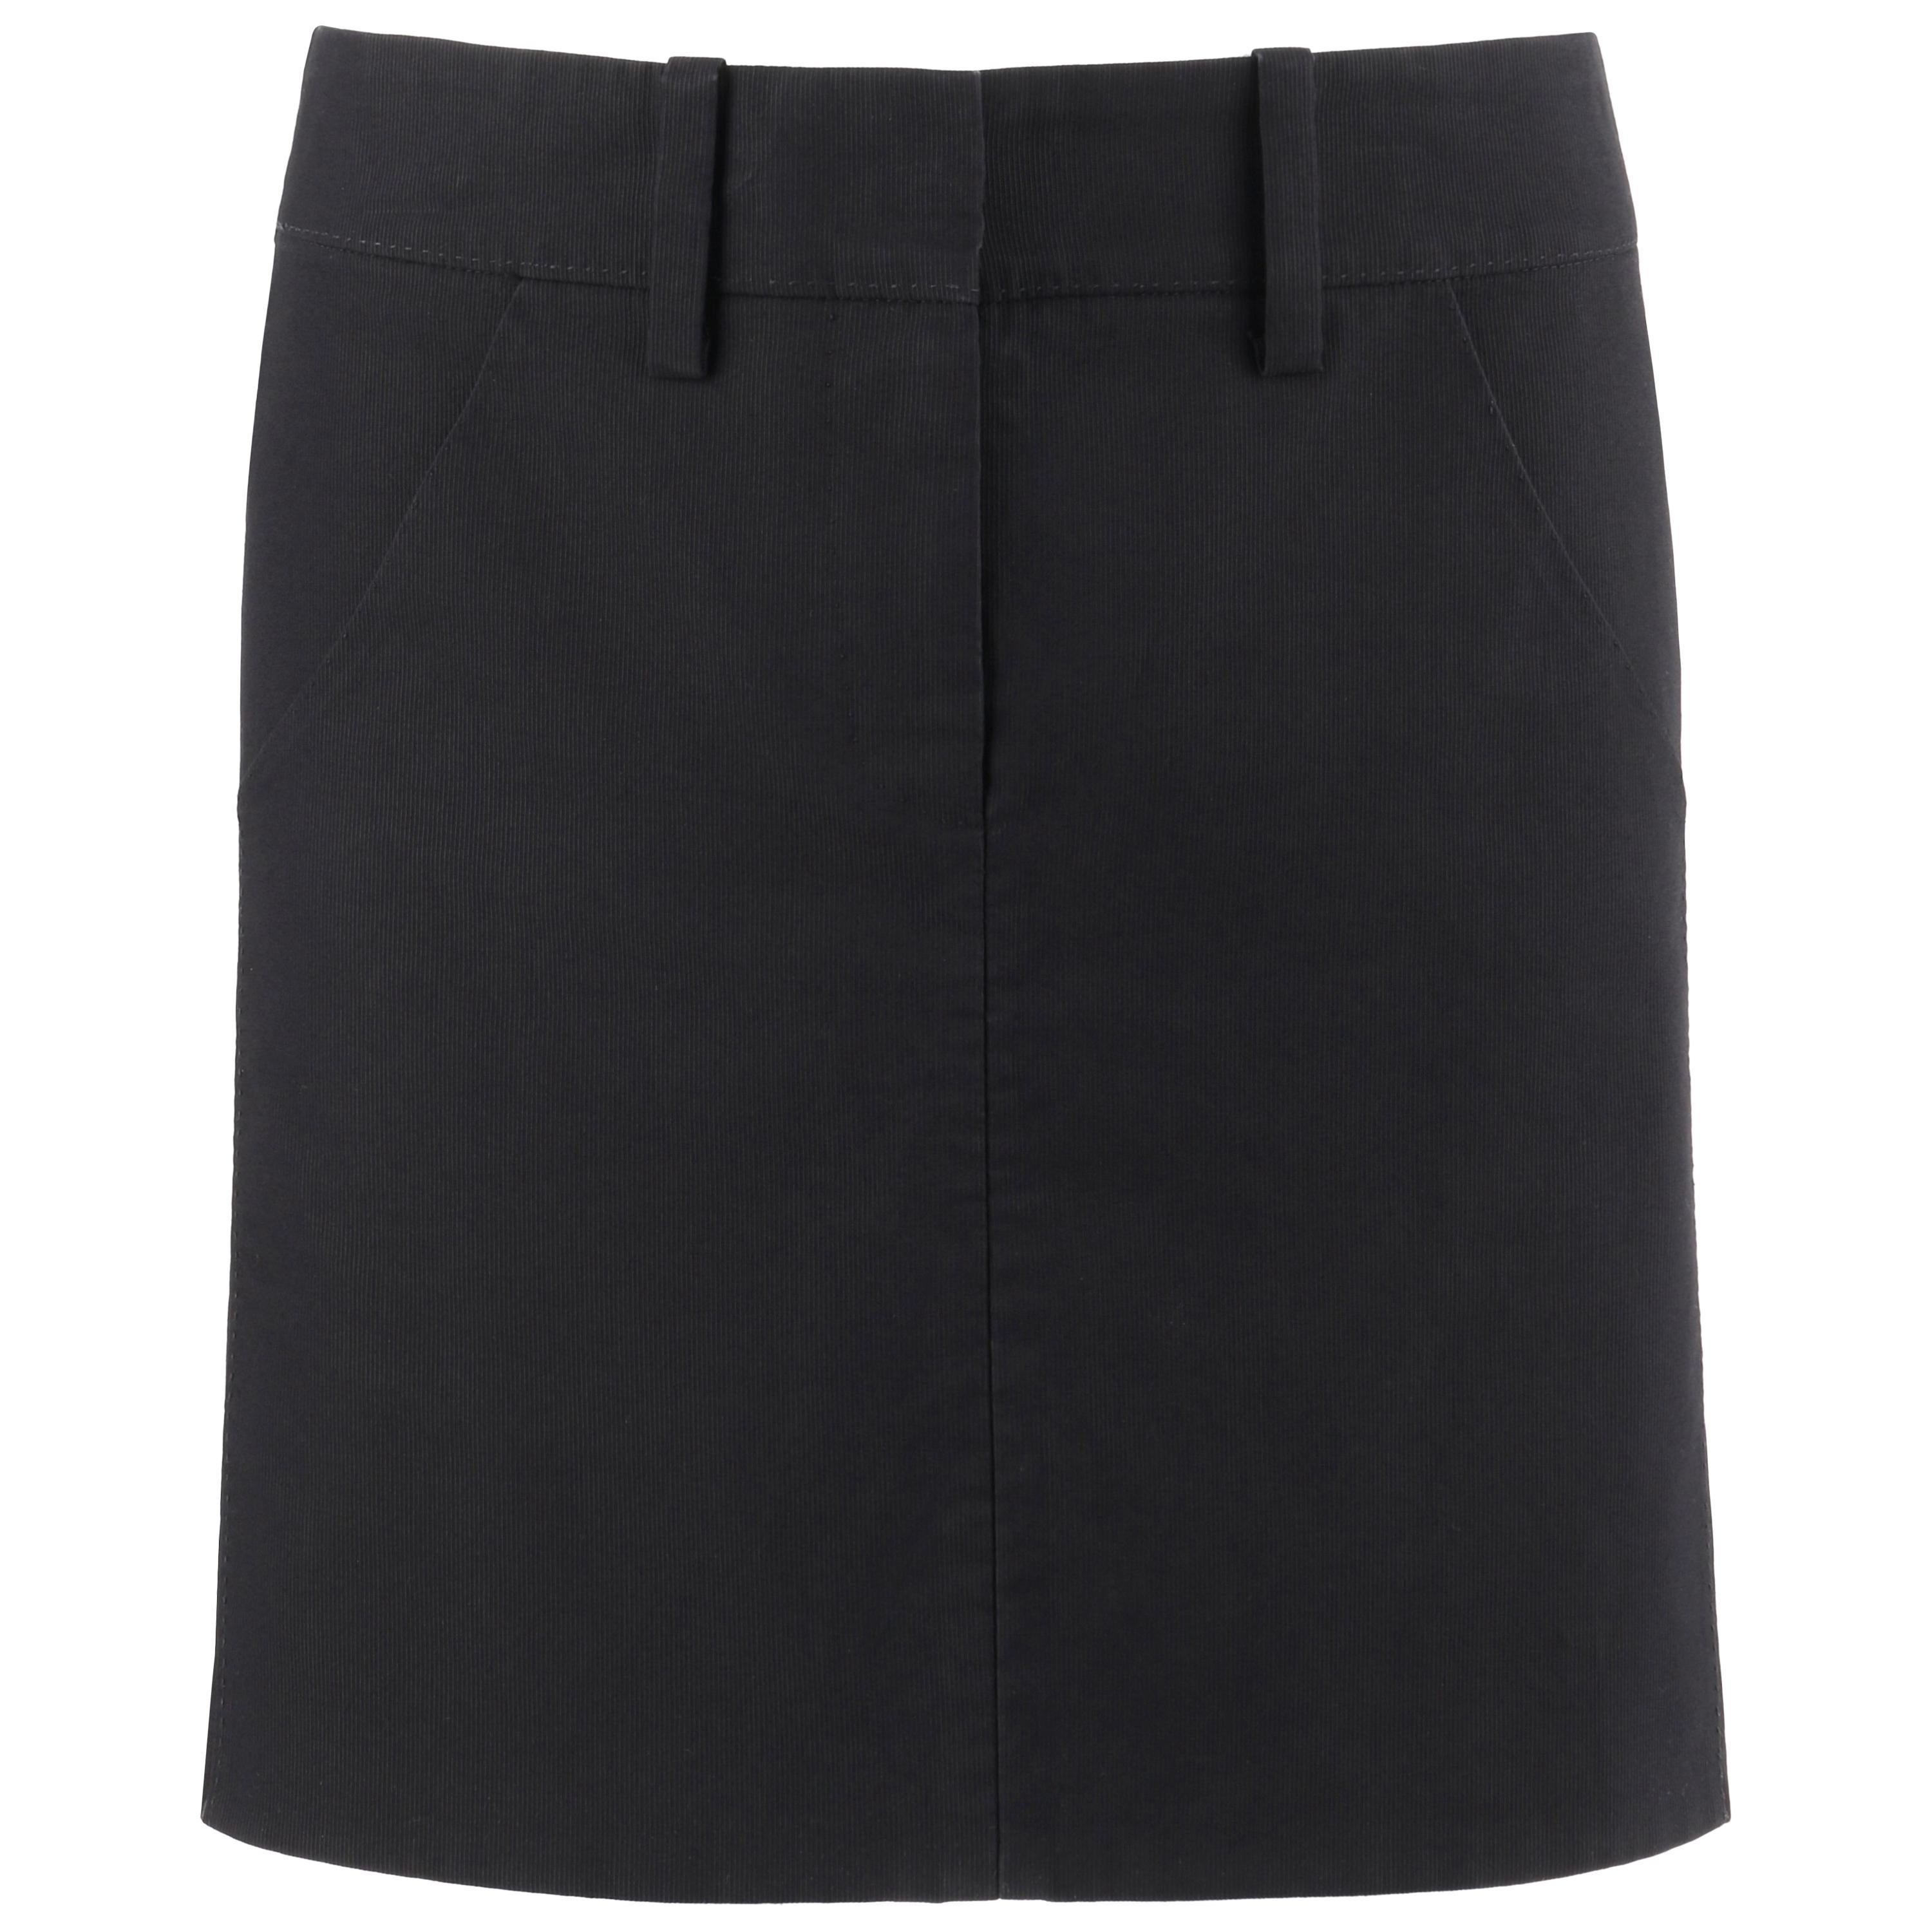 ALEXANDER McQUEEN S/S 2003 "Irere" Black Godet Mini Skirt